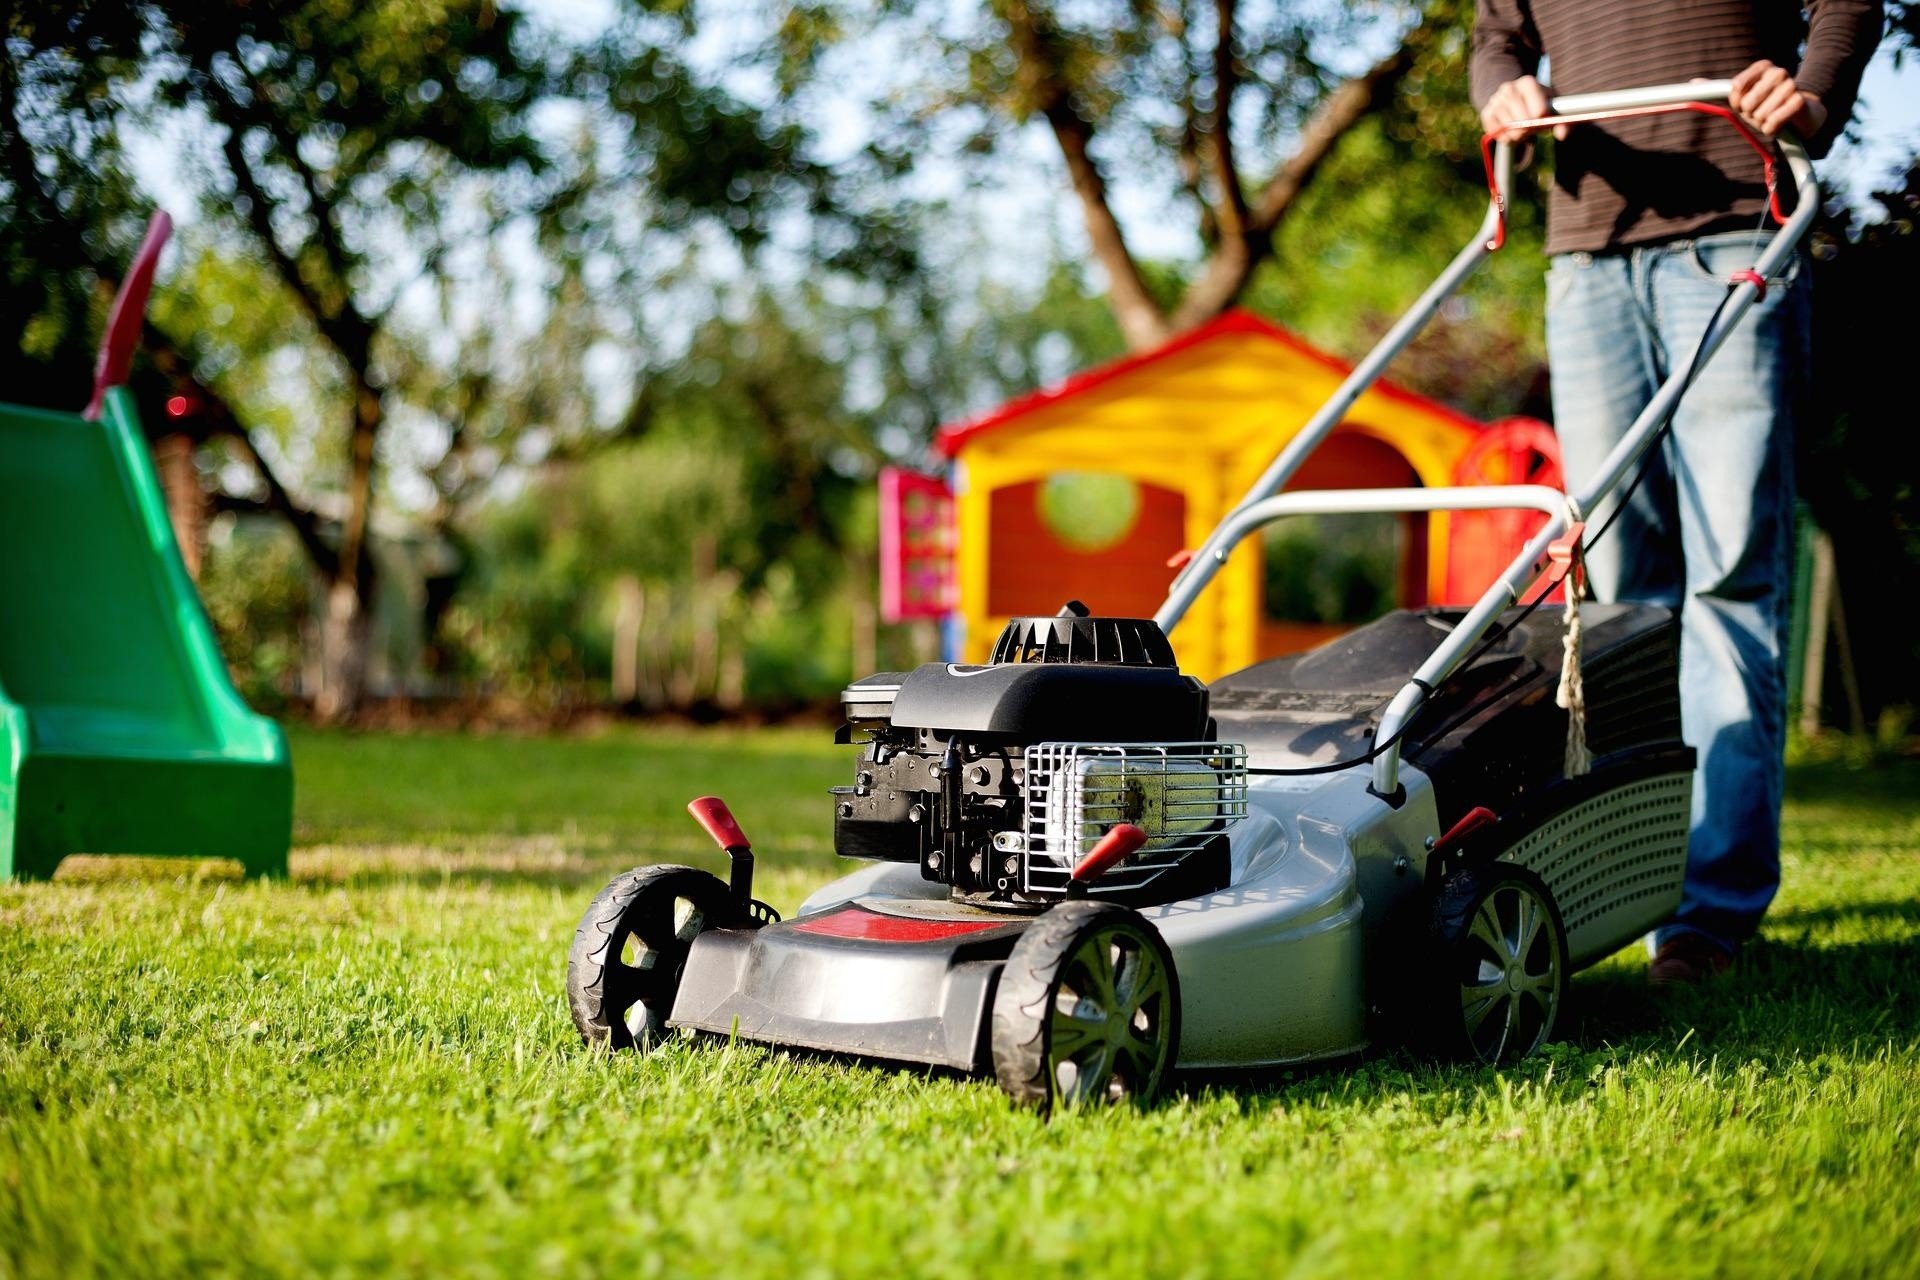 Kosiarka spalinowa, elektryczna, kosiarka ręczna lub kosiarka traktorowa,  która najlepiej sprawdzi się w Twoim ogrodzie? | Strefa Agro